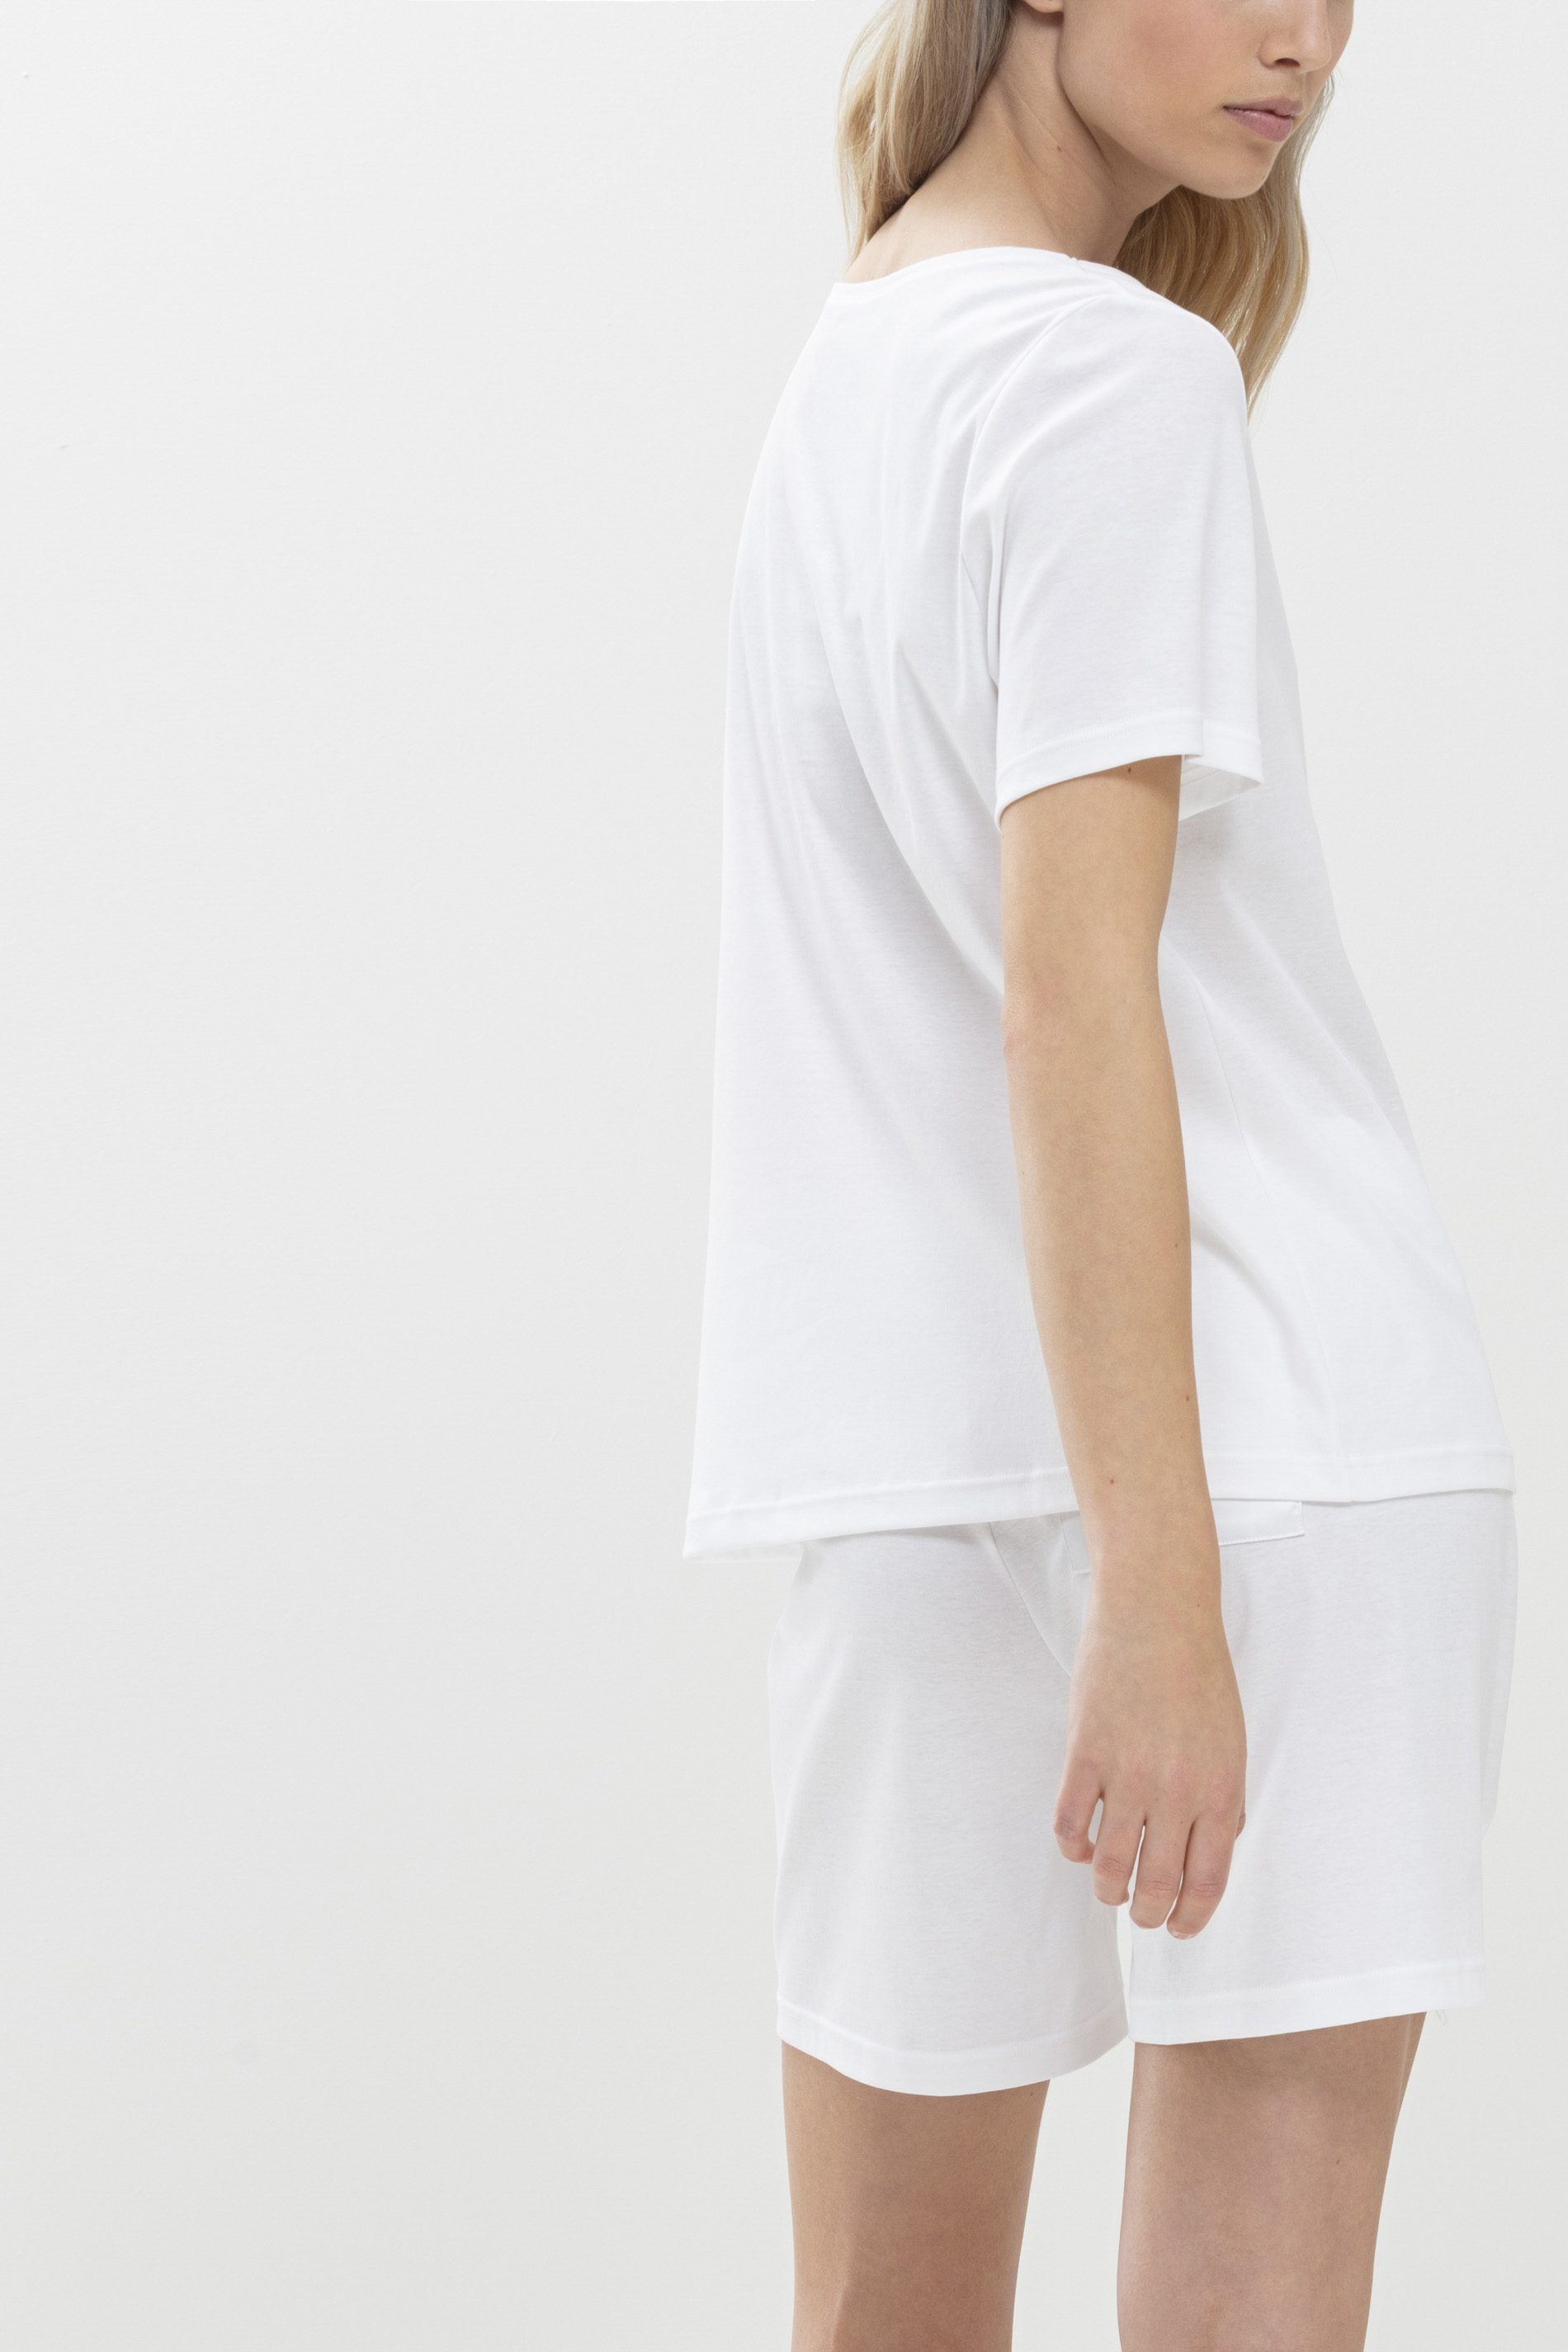 Shirt Weiss Serie Sleepsation Rückansicht | mey®